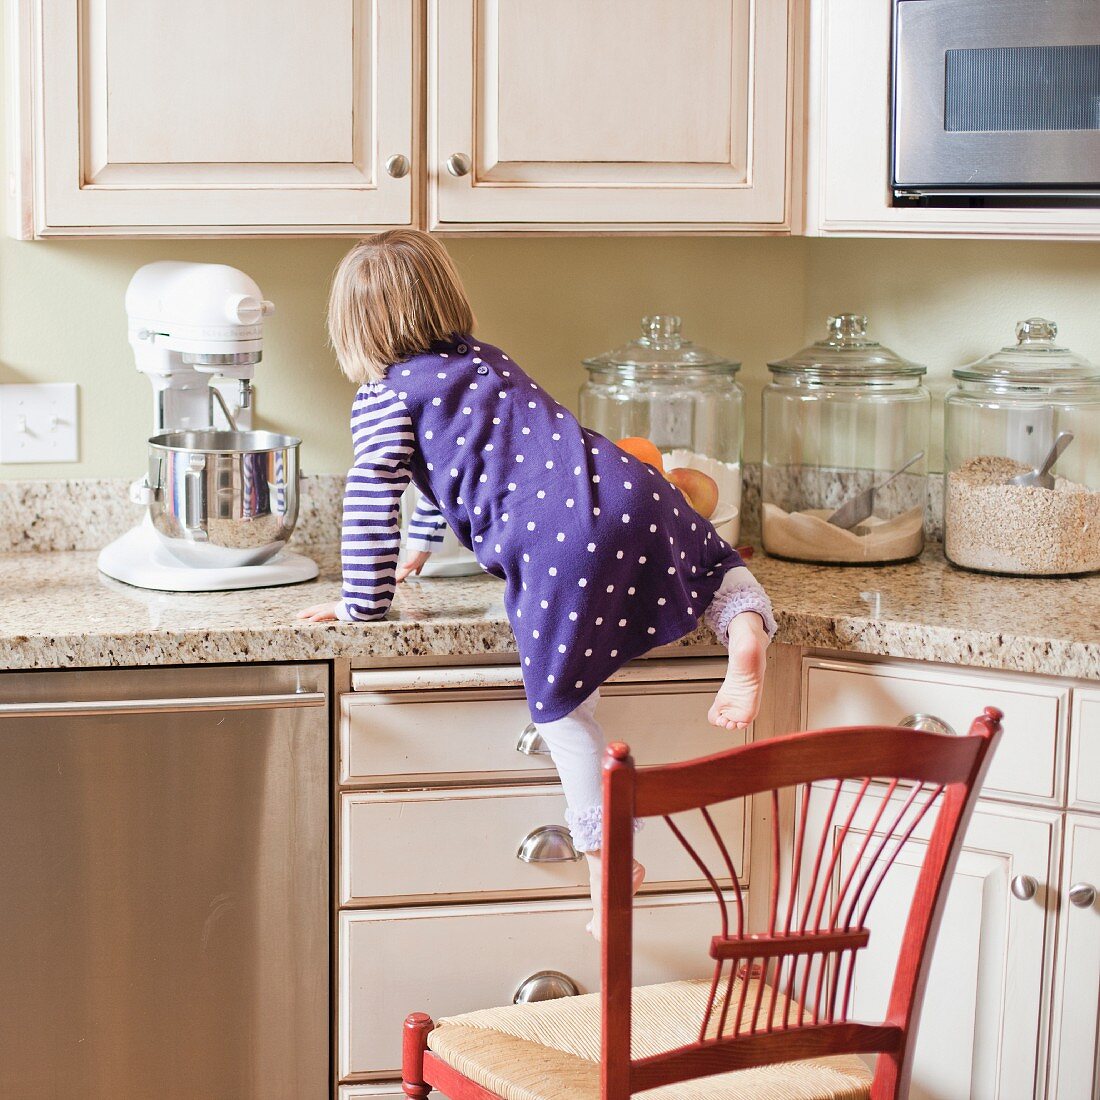 Mädchen klettert auf Schrank in der Küche